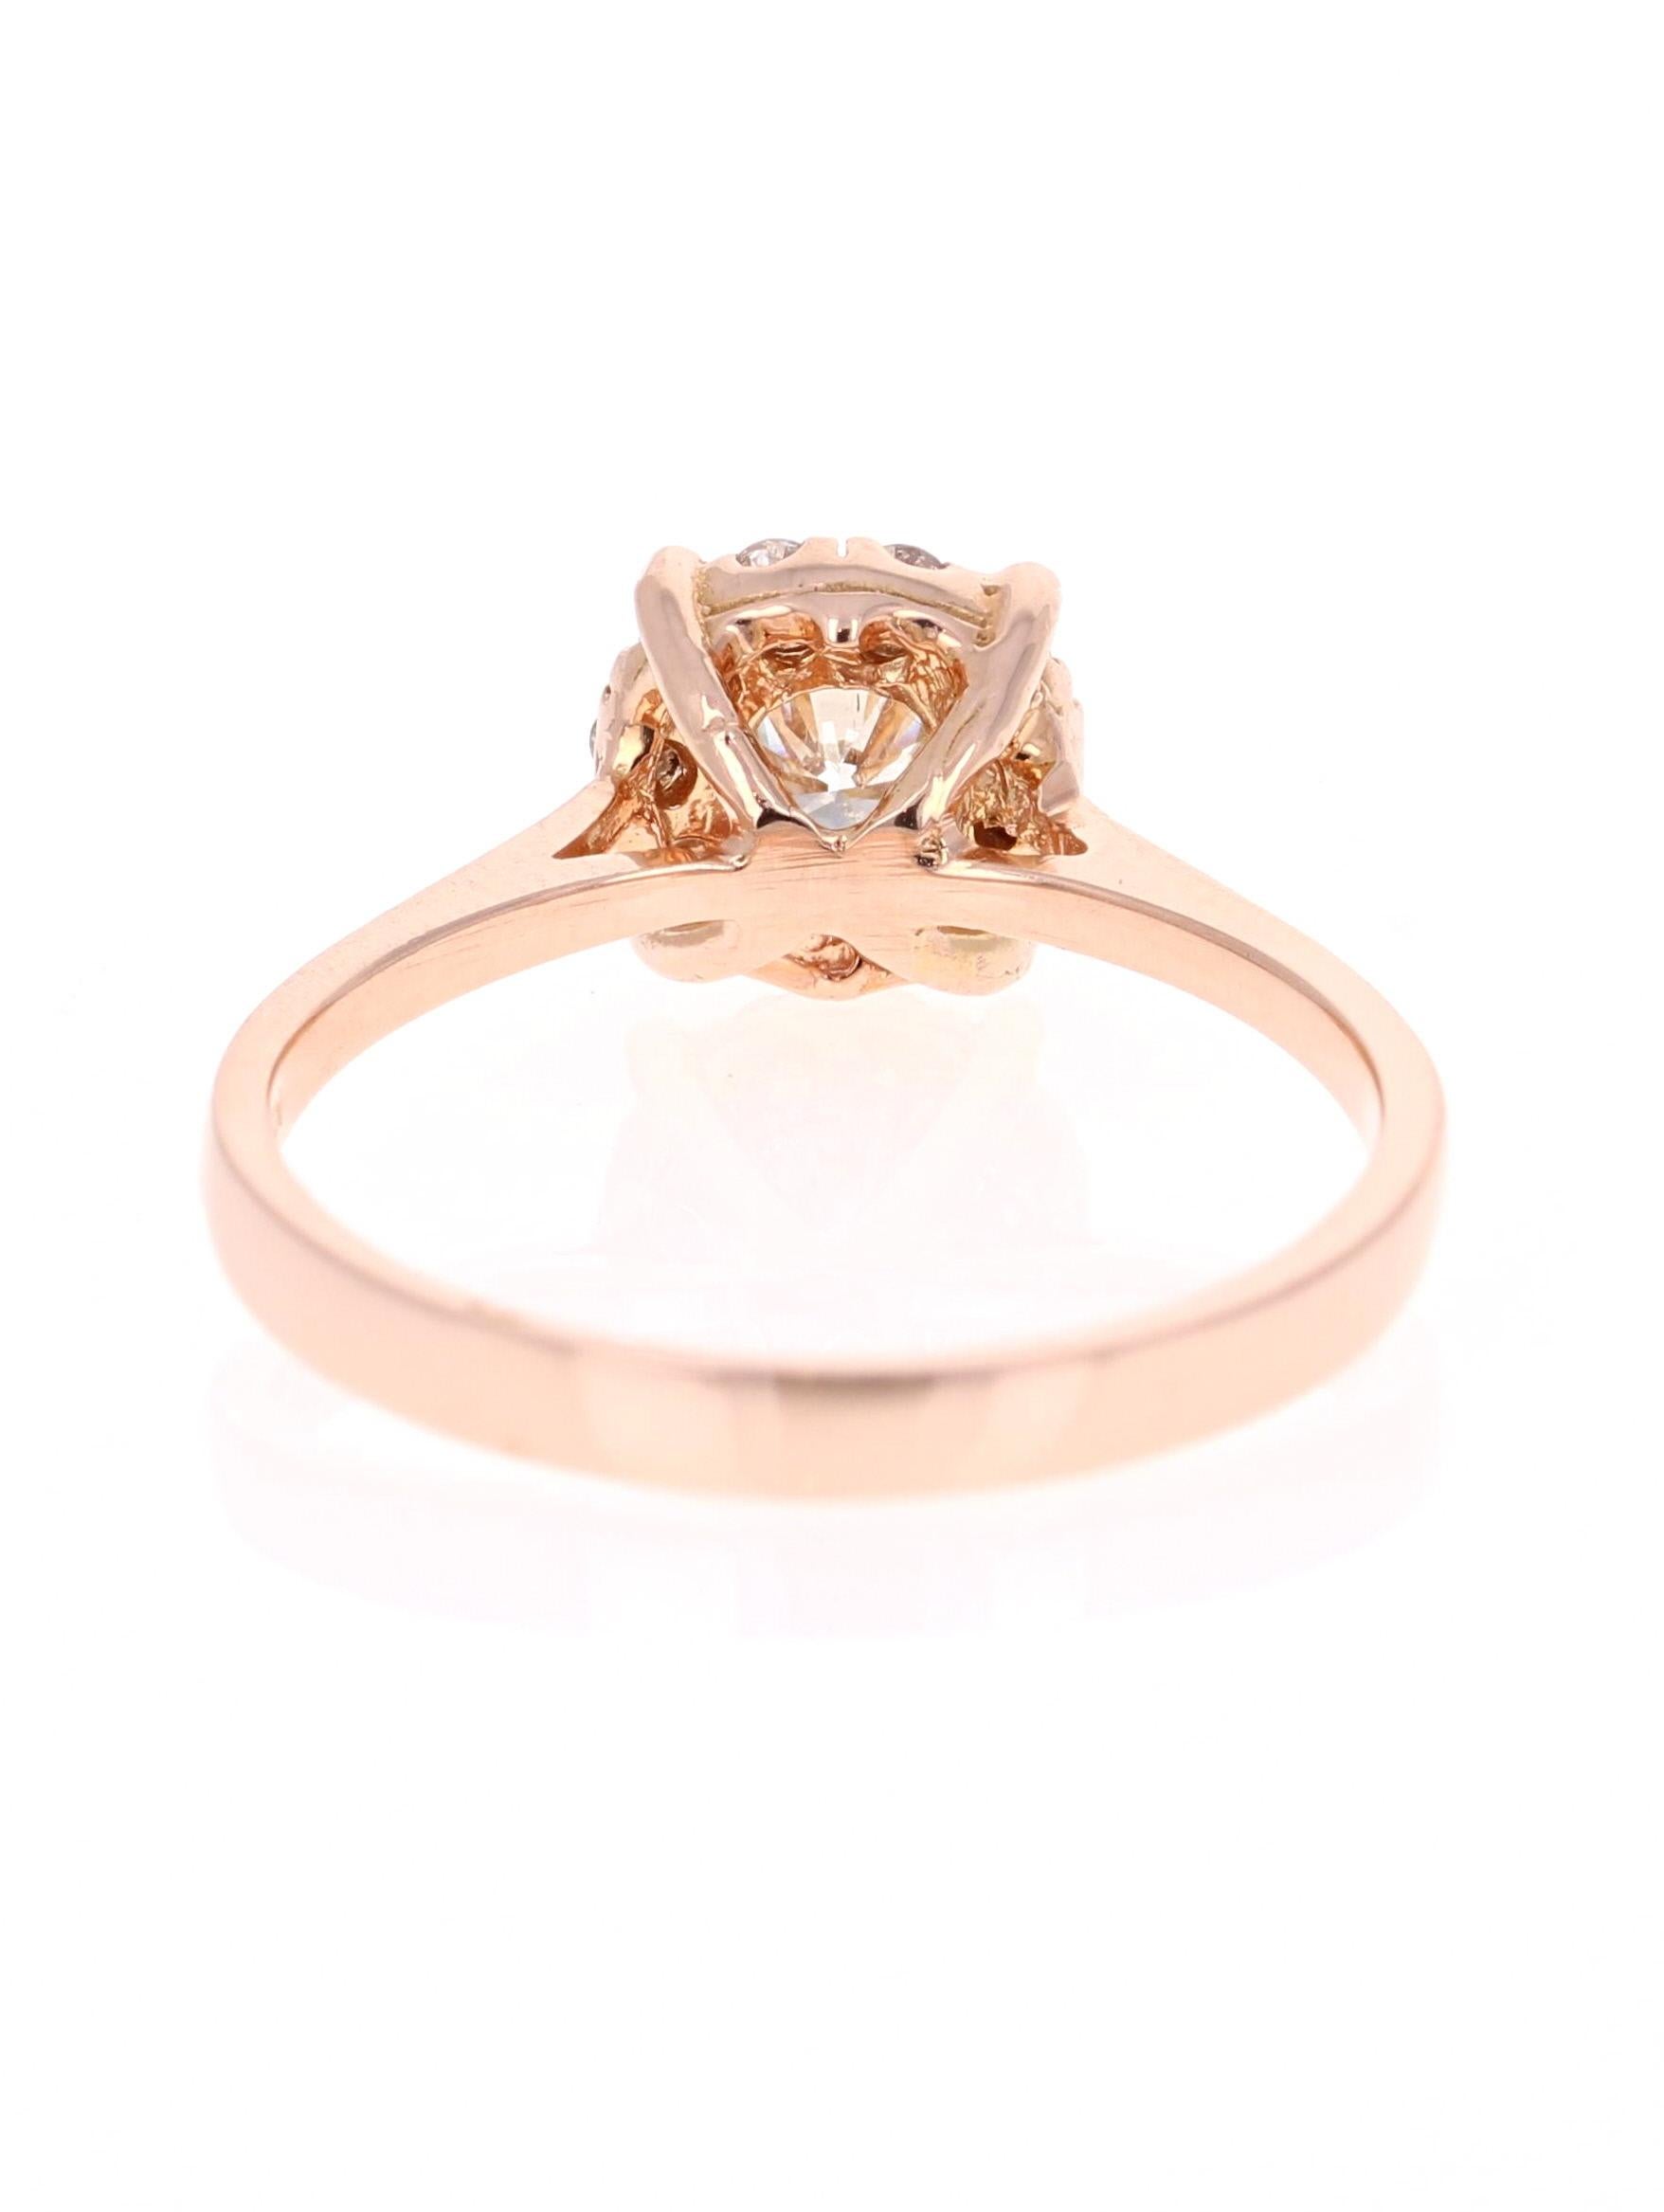 Round Cut 0.44 Carat Diamond 14 Karat Rose Gold Ring